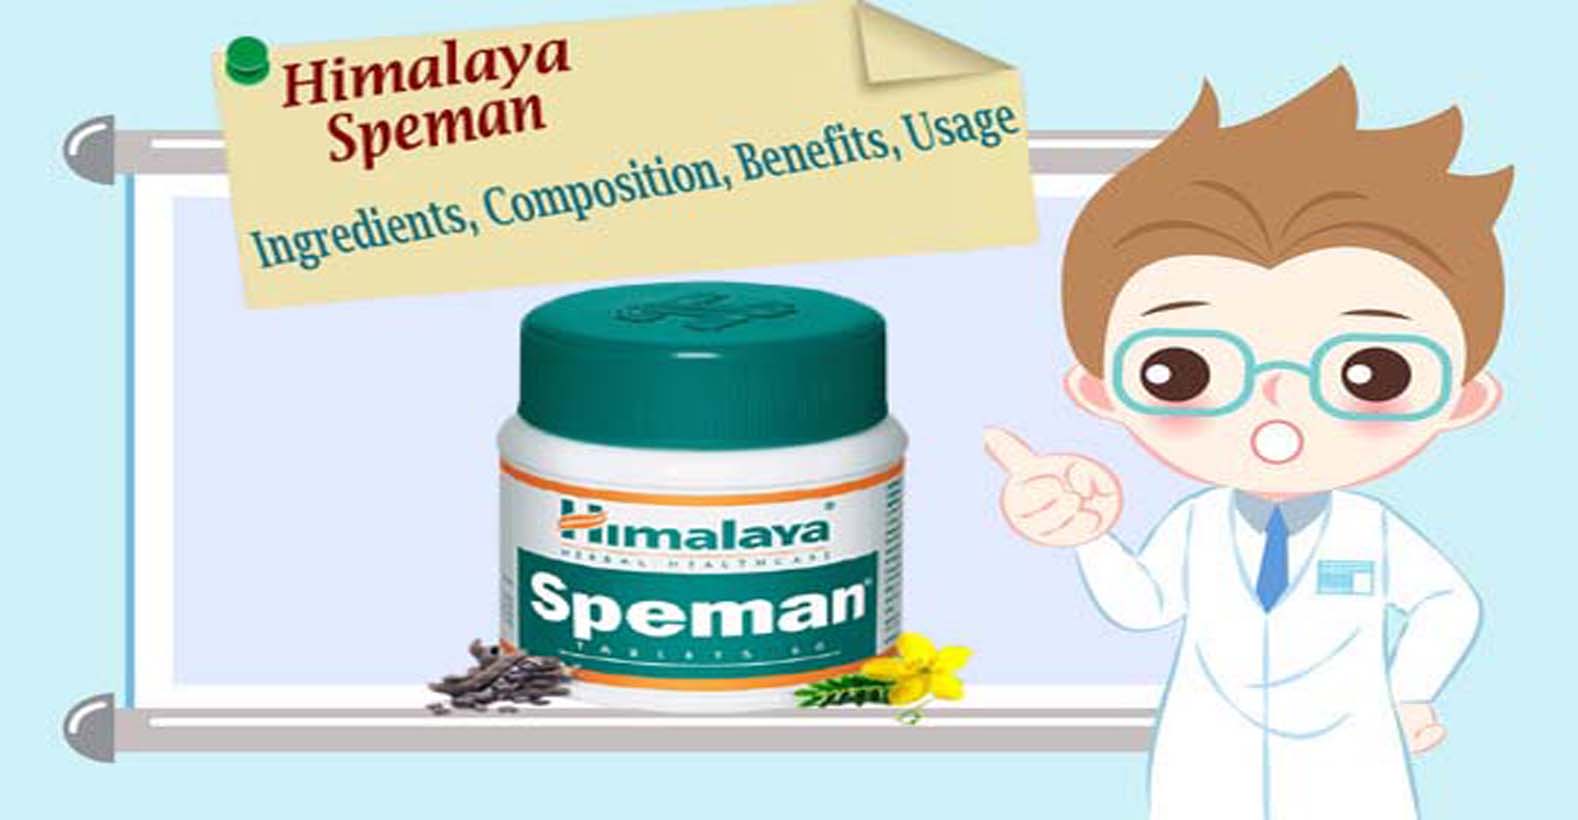 speman himalaya ingredients